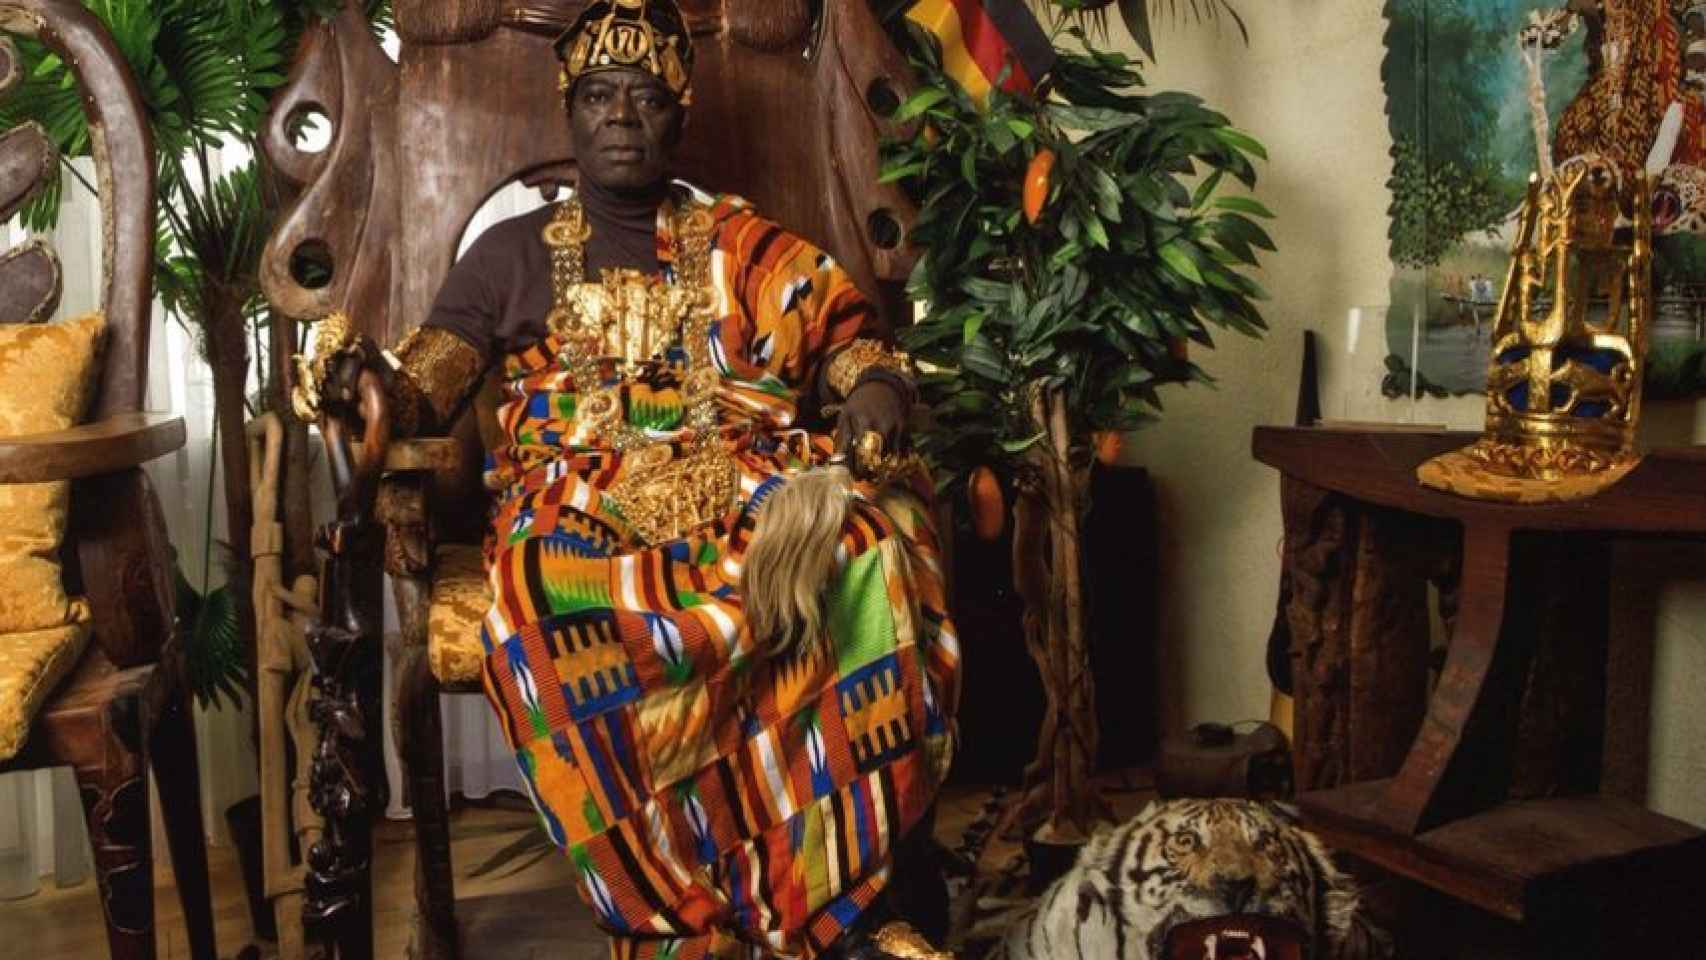 Cephas Bensah, del pueblo Ewe de Ghana, tiene 380.000 súbditos